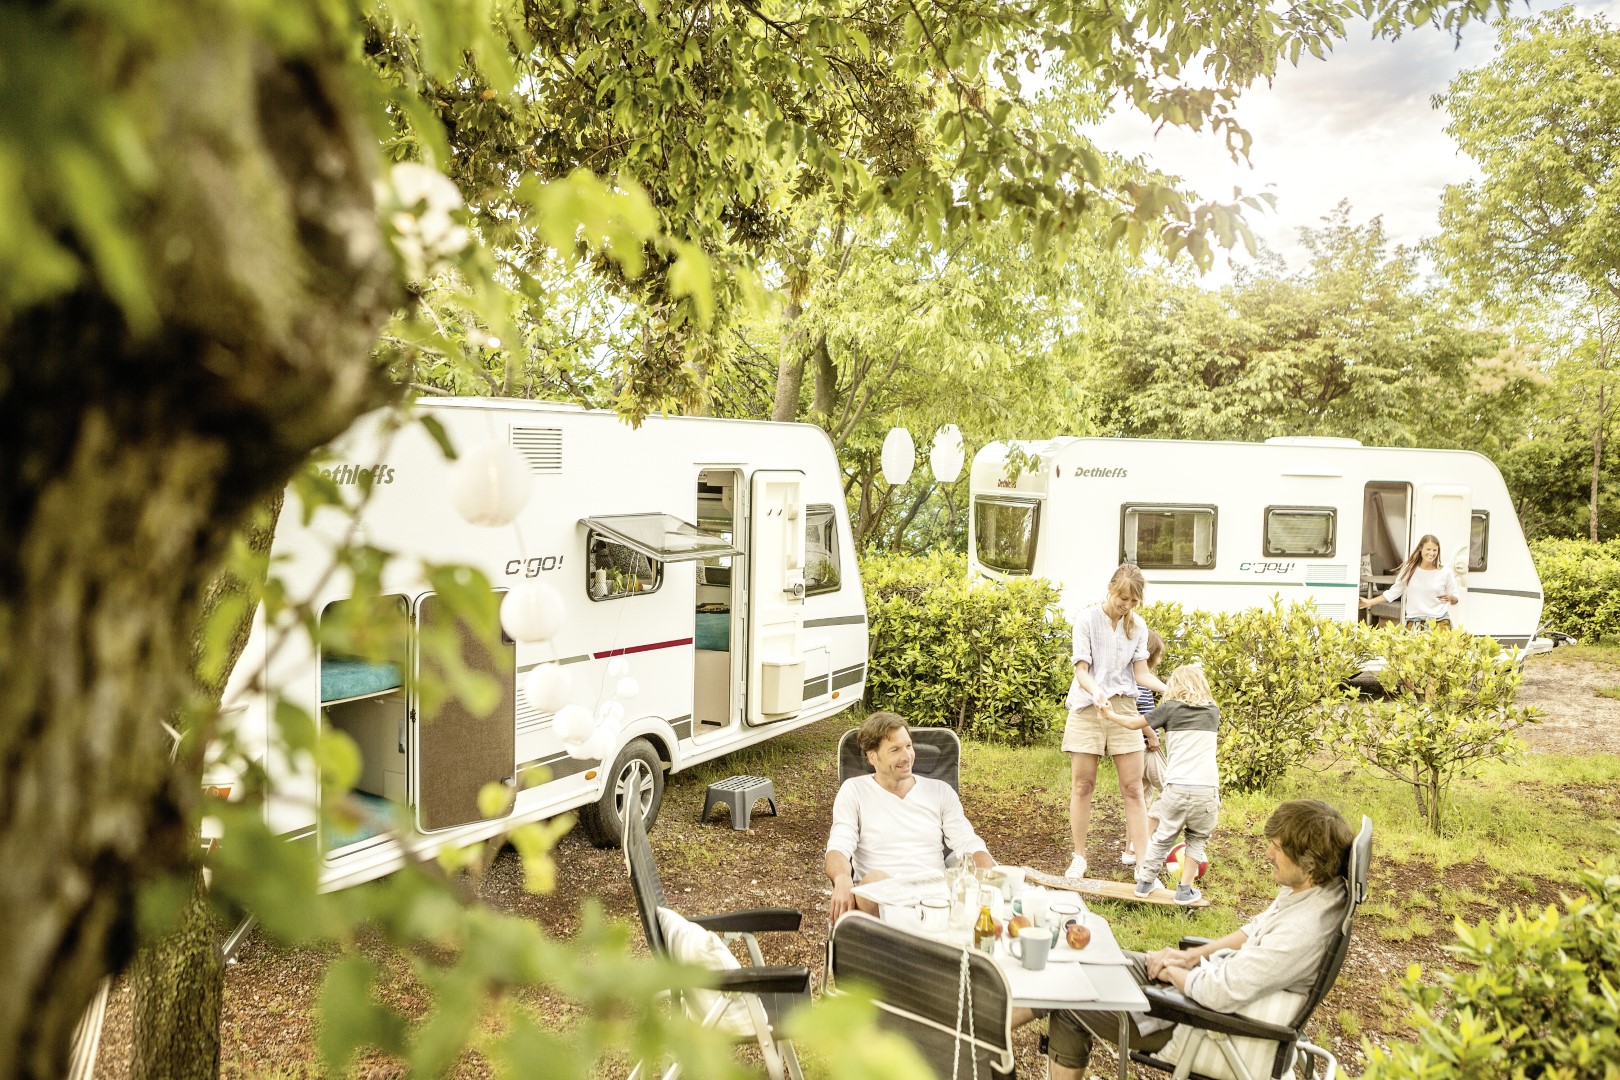 Campingformen von Familiencamping über Camping mit Kindern, zu zweit, allein oder Camping mit Hund - wie campst Du am liebsten?